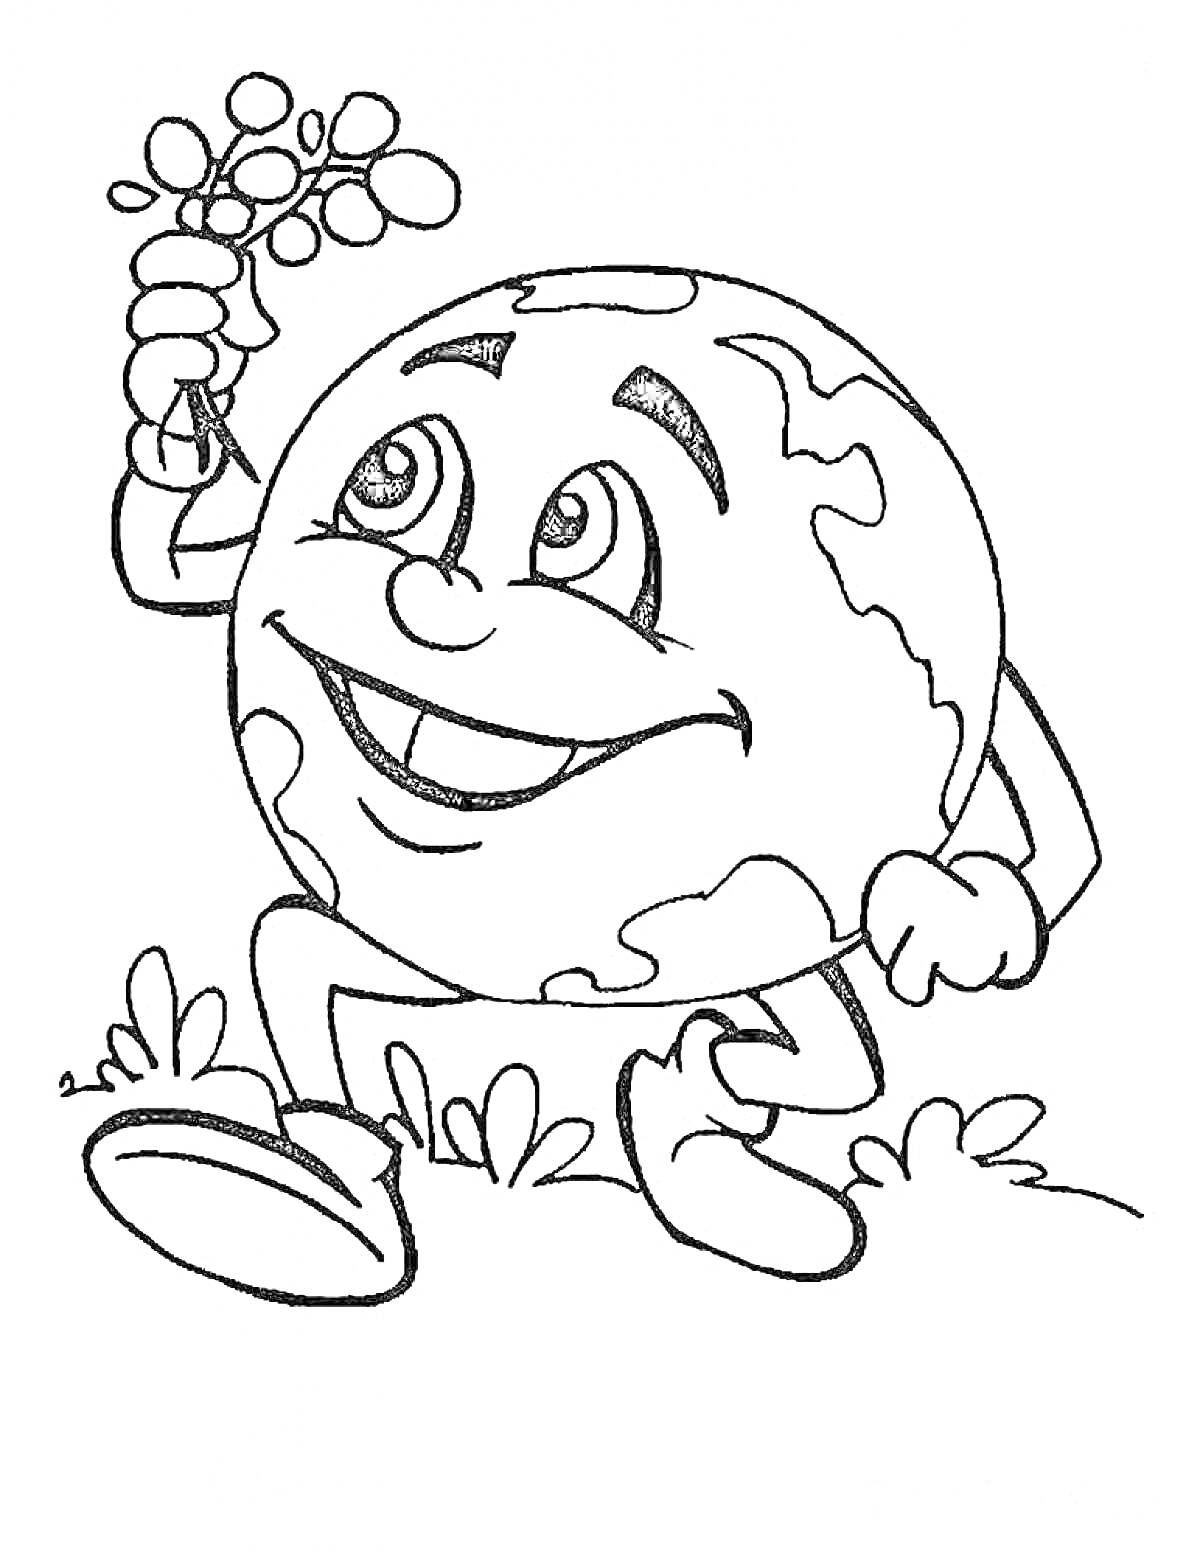 Раскраска Земной шар с улыбкой и цветком, сидящий на траве